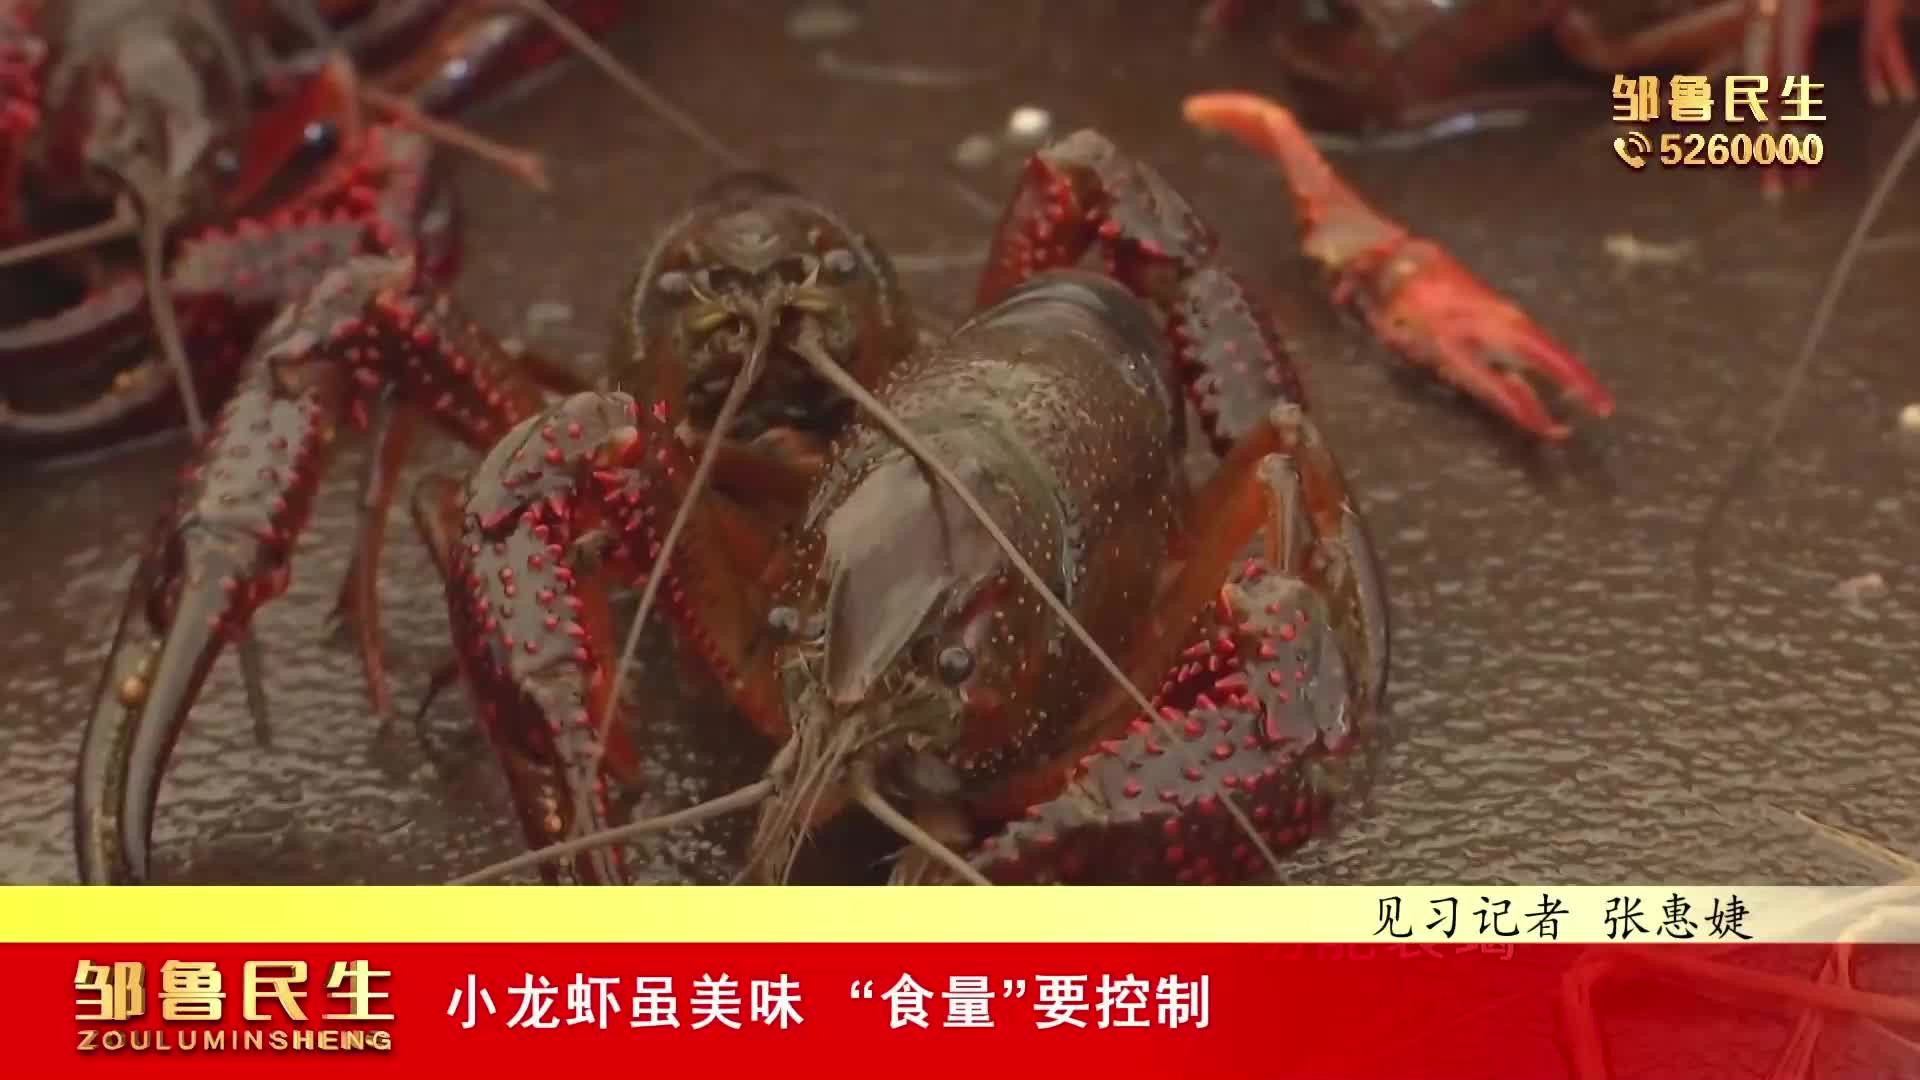 【视频新闻】小龙虾虽美味“食量”要控制